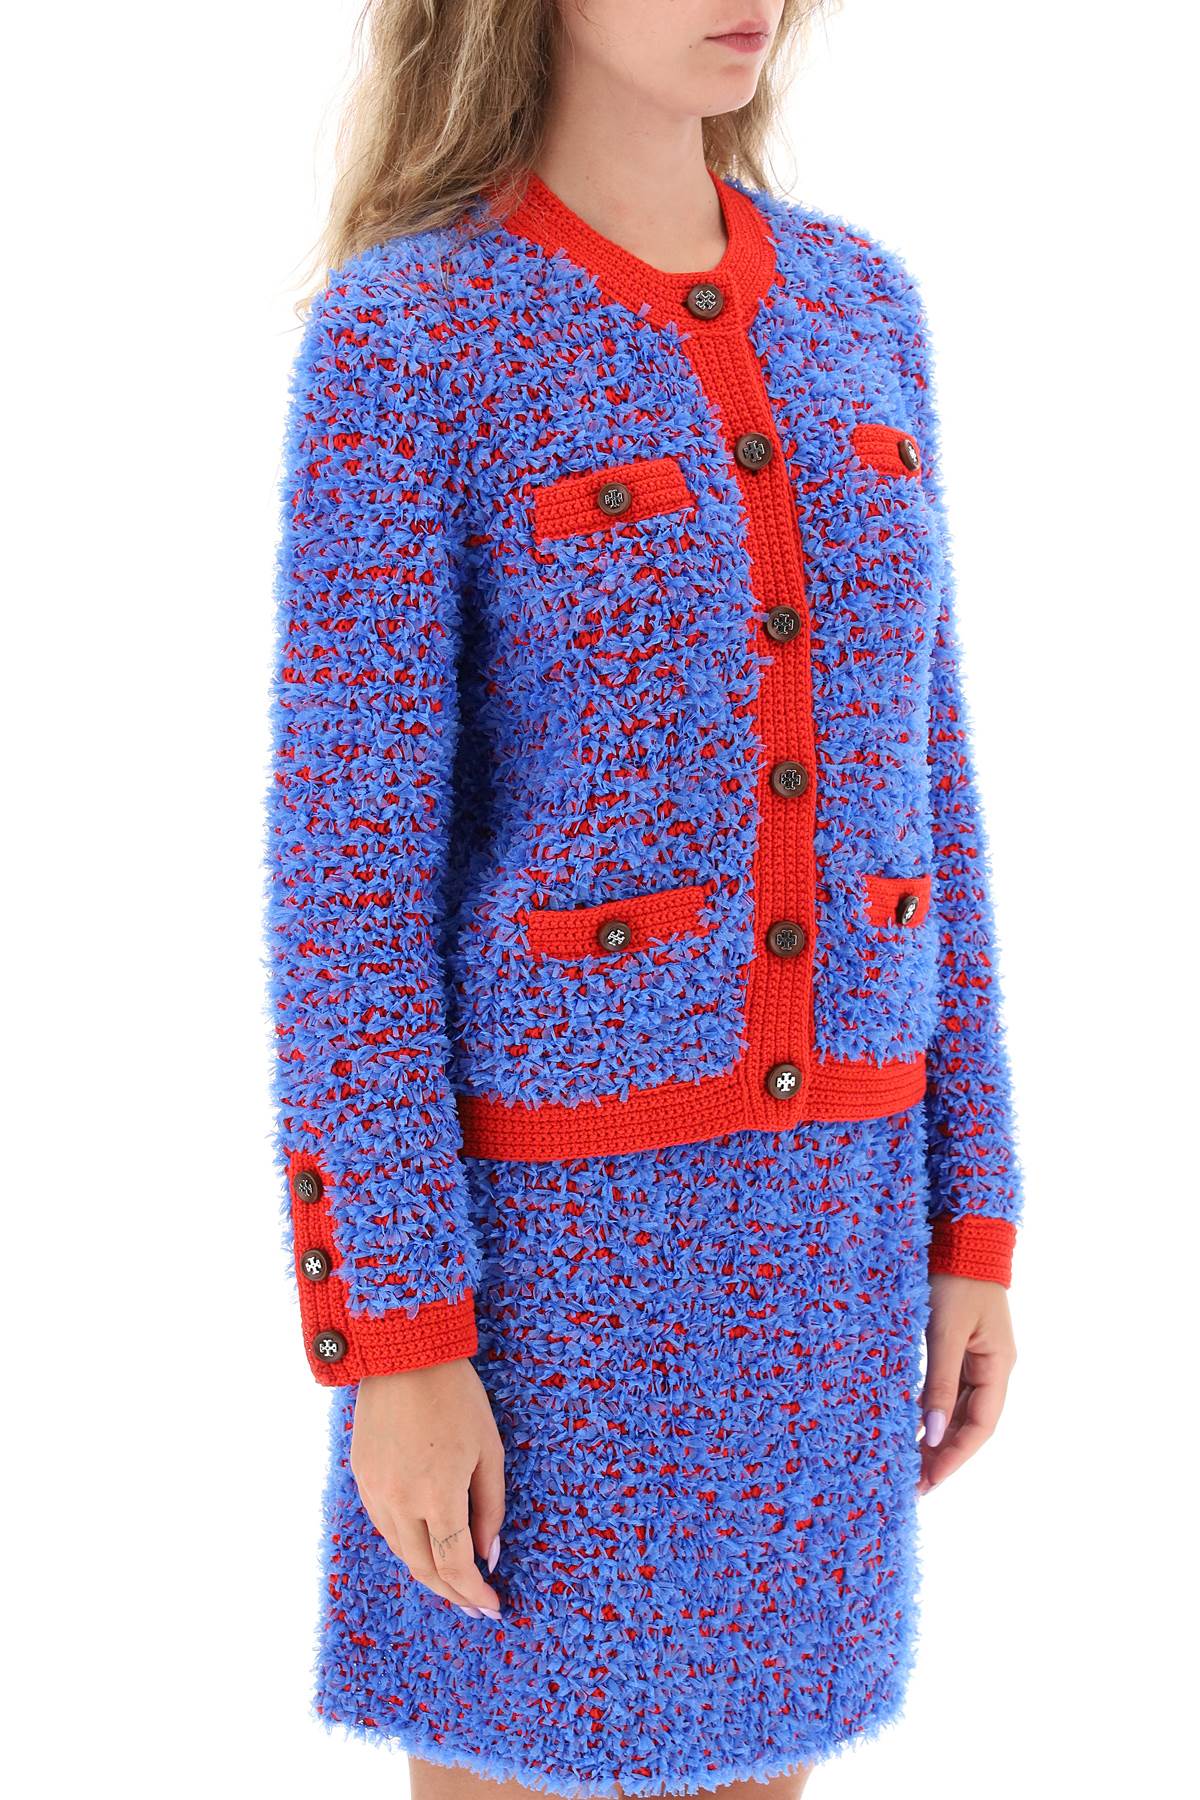 Áo khoác Tweed Confetti dành cho phụ nữ - Phong cách cổ điển và túi đa năng